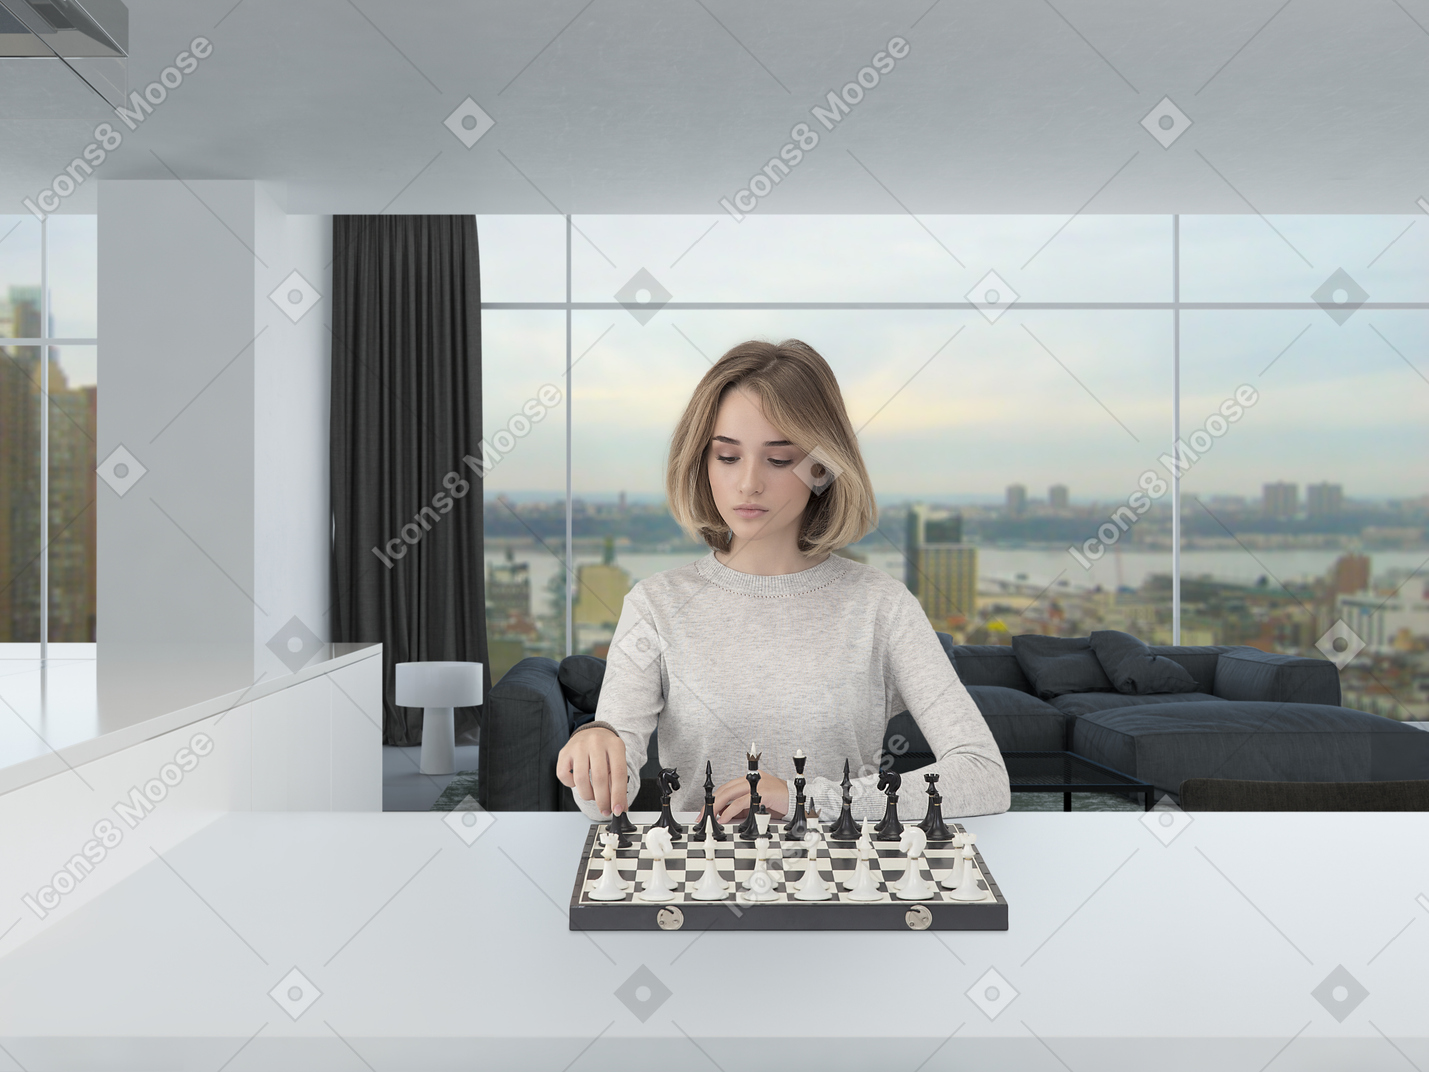 밝은 회색 점퍼에 아름 다운 젊은 여자는 넓은 현대적인 방에서 체스를 재생하는 동안 집중 찾고